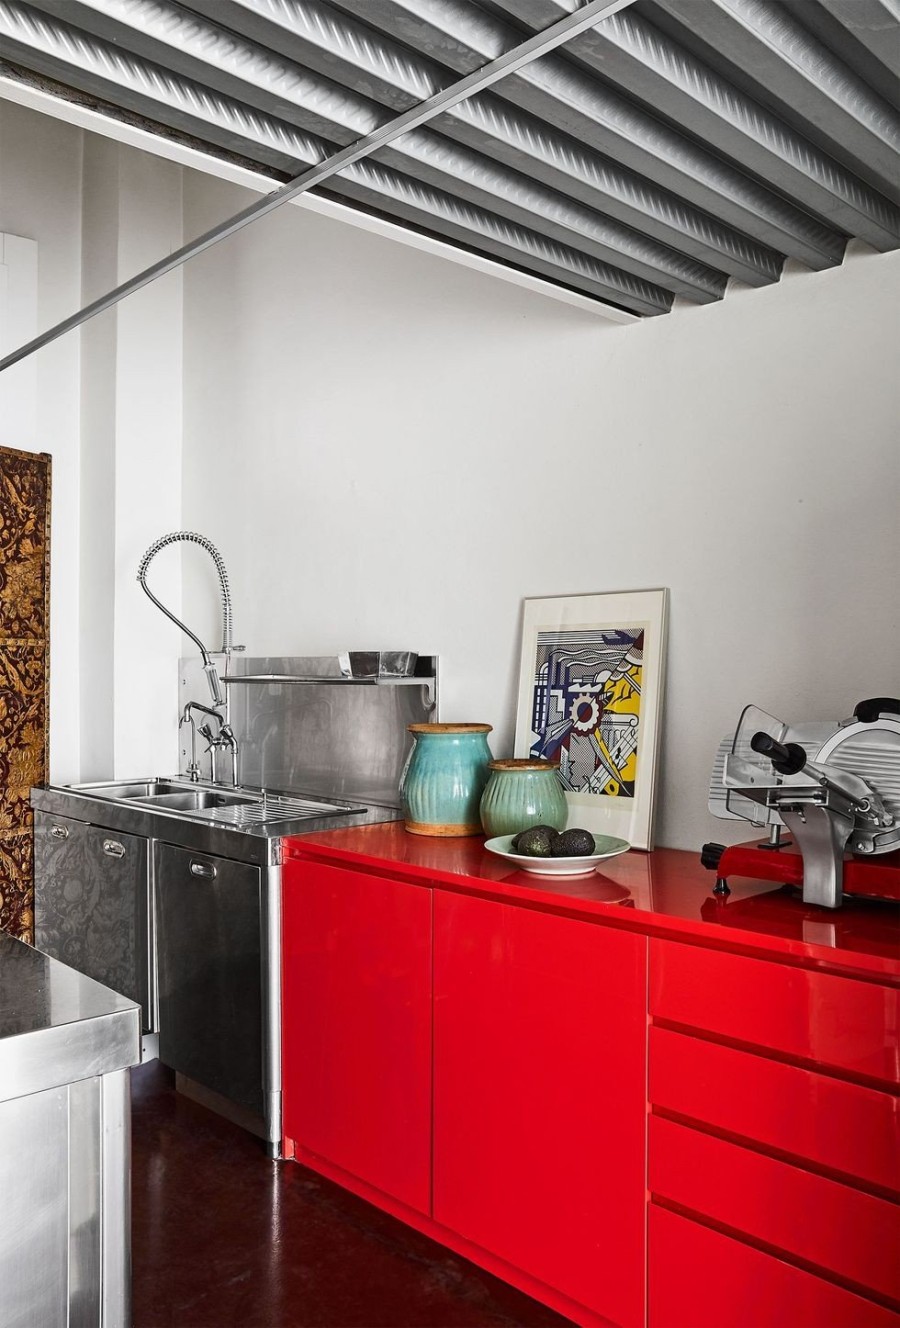 Ένα chic διαμέρισμα στο Μιλάνο «κλείνει» μέσα του όλη την ιταλική φινέτσα - Φωτογραφία 3